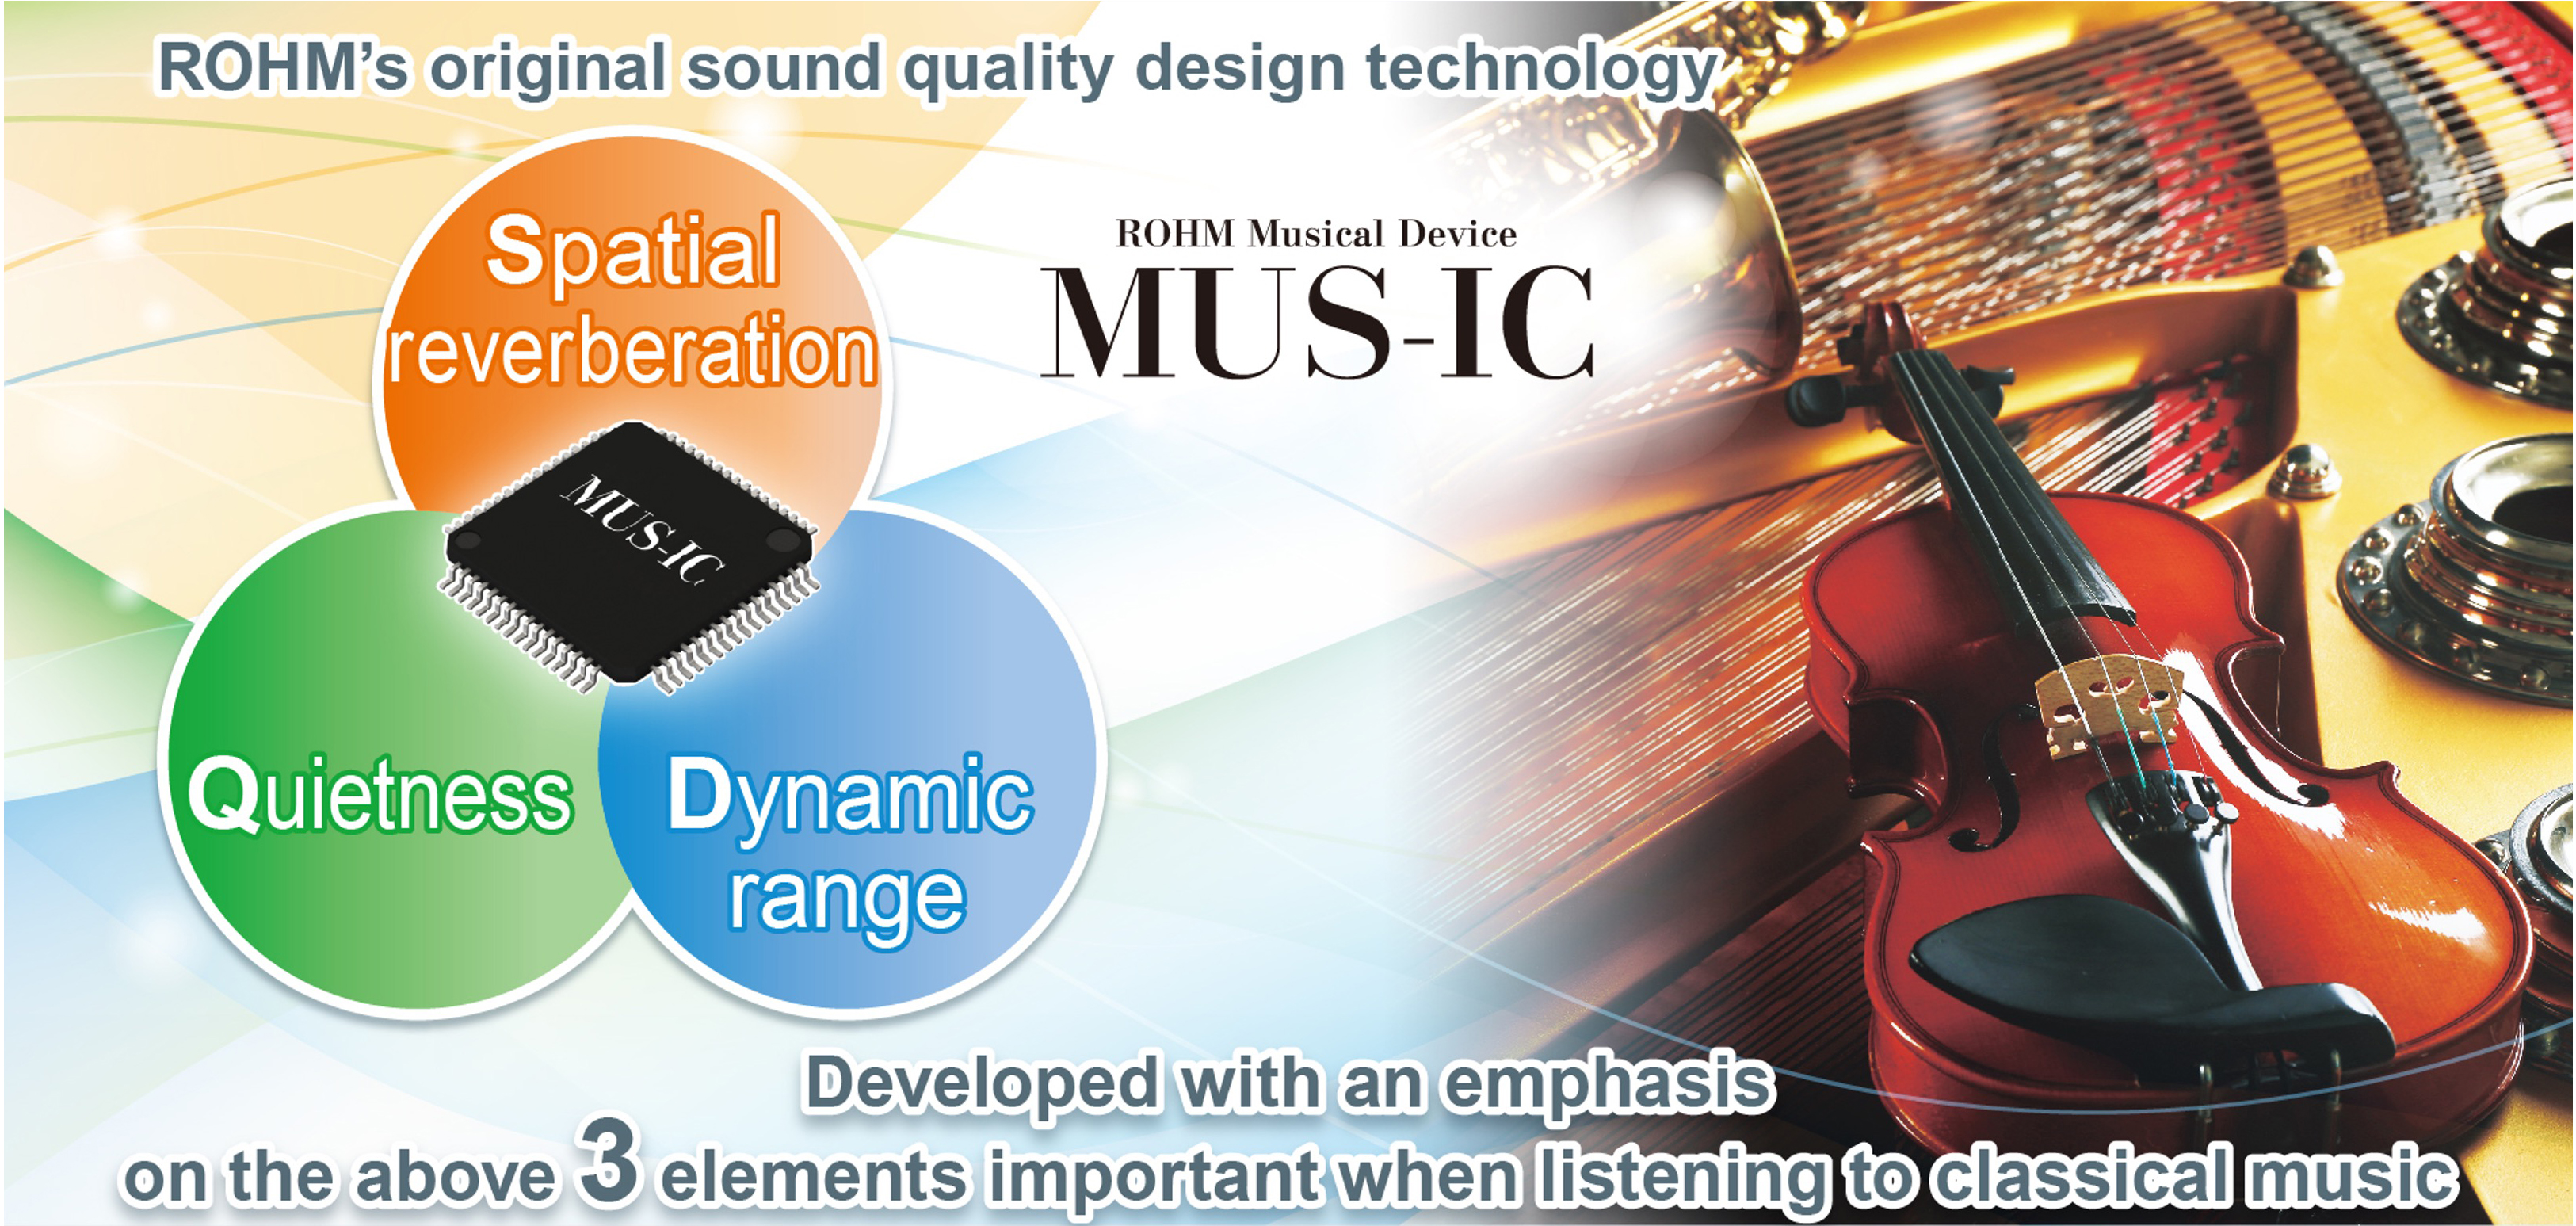 ROHM’s original sound quality design technology